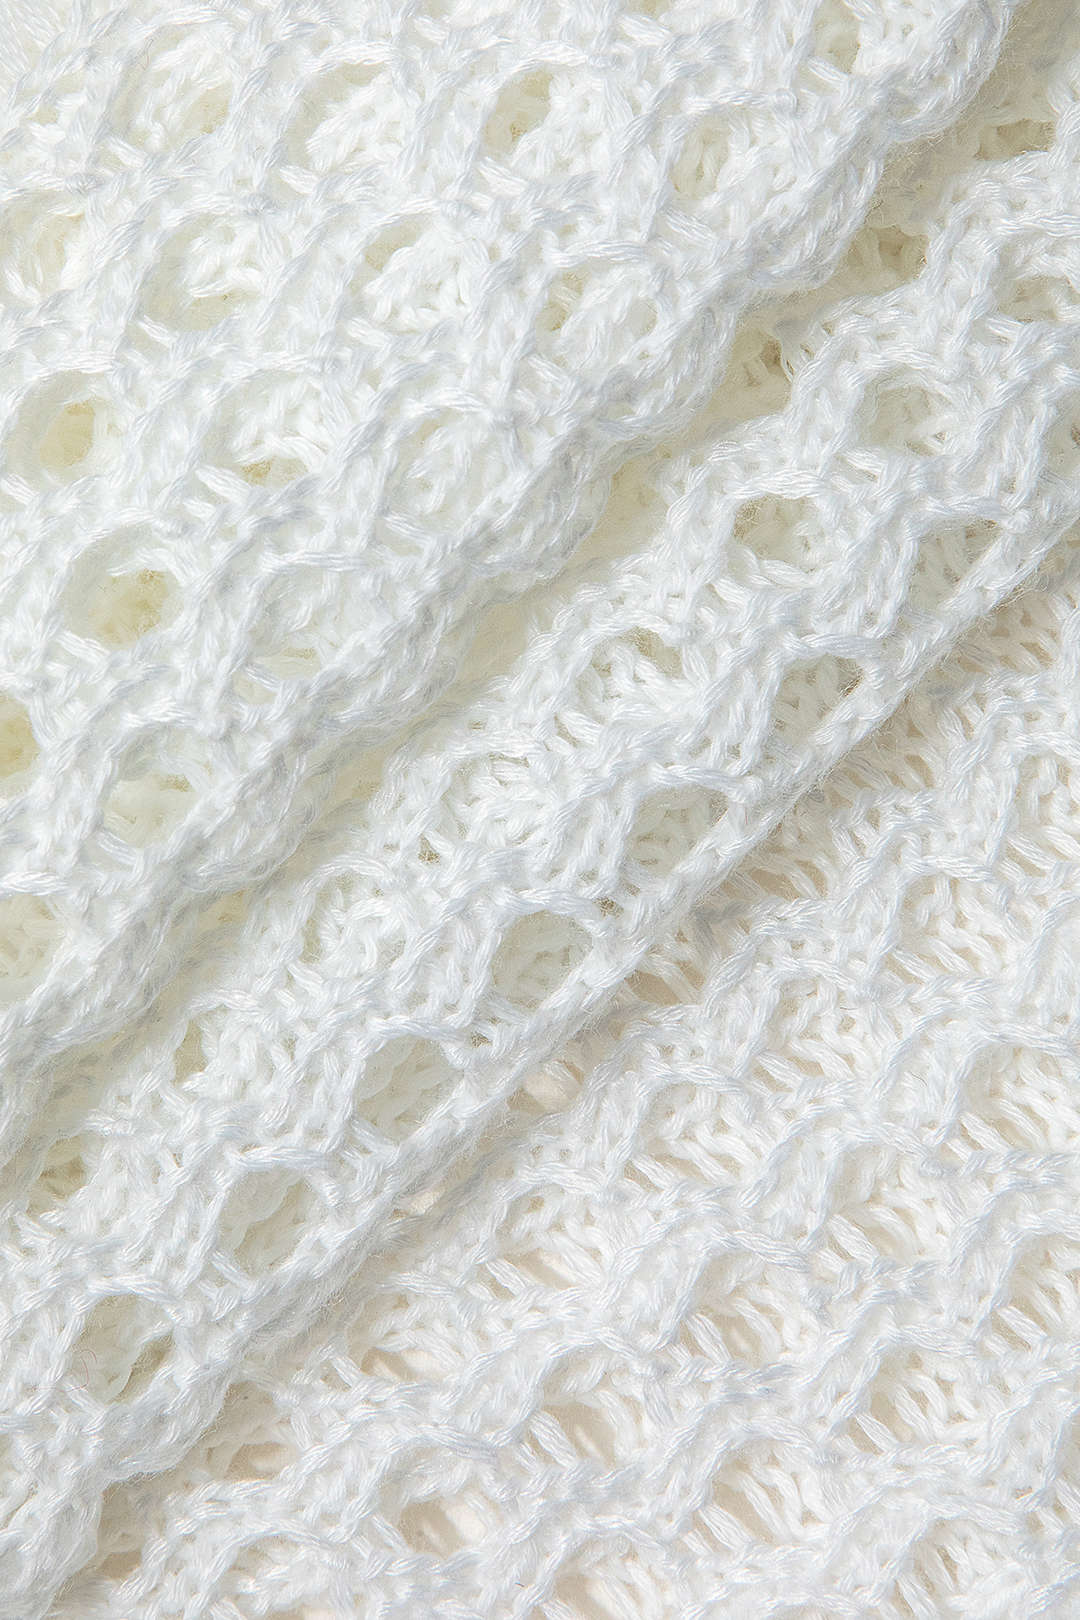 Crochet V-neck Slip Slit Cover Up